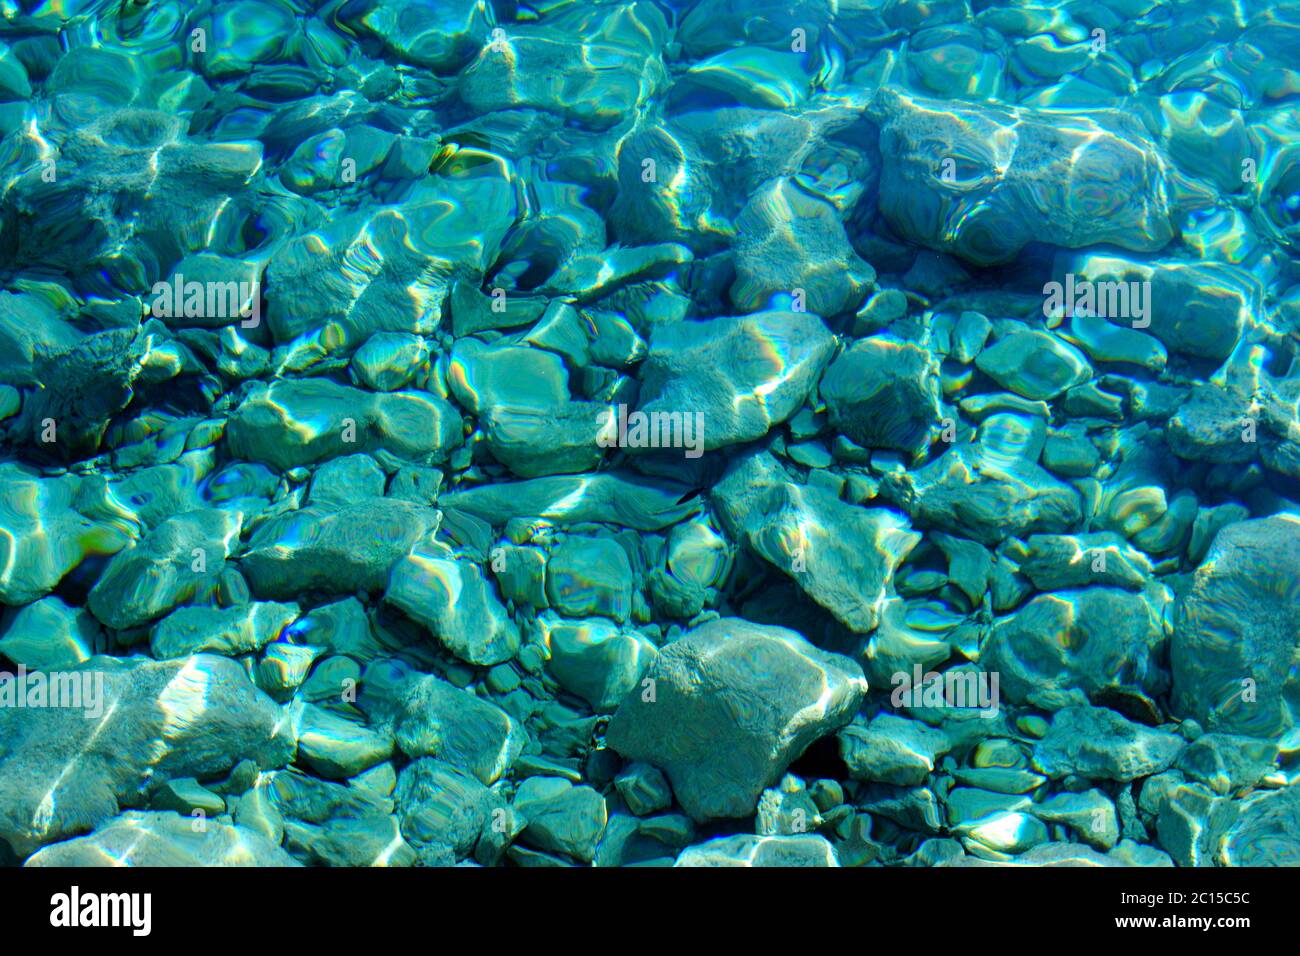 Nahaufnahme des Meeresbodens durch kristallklares Wasser (schön als Buchcover, Website-Hintergrund oder Desktop-Wallpaper) Stockfoto